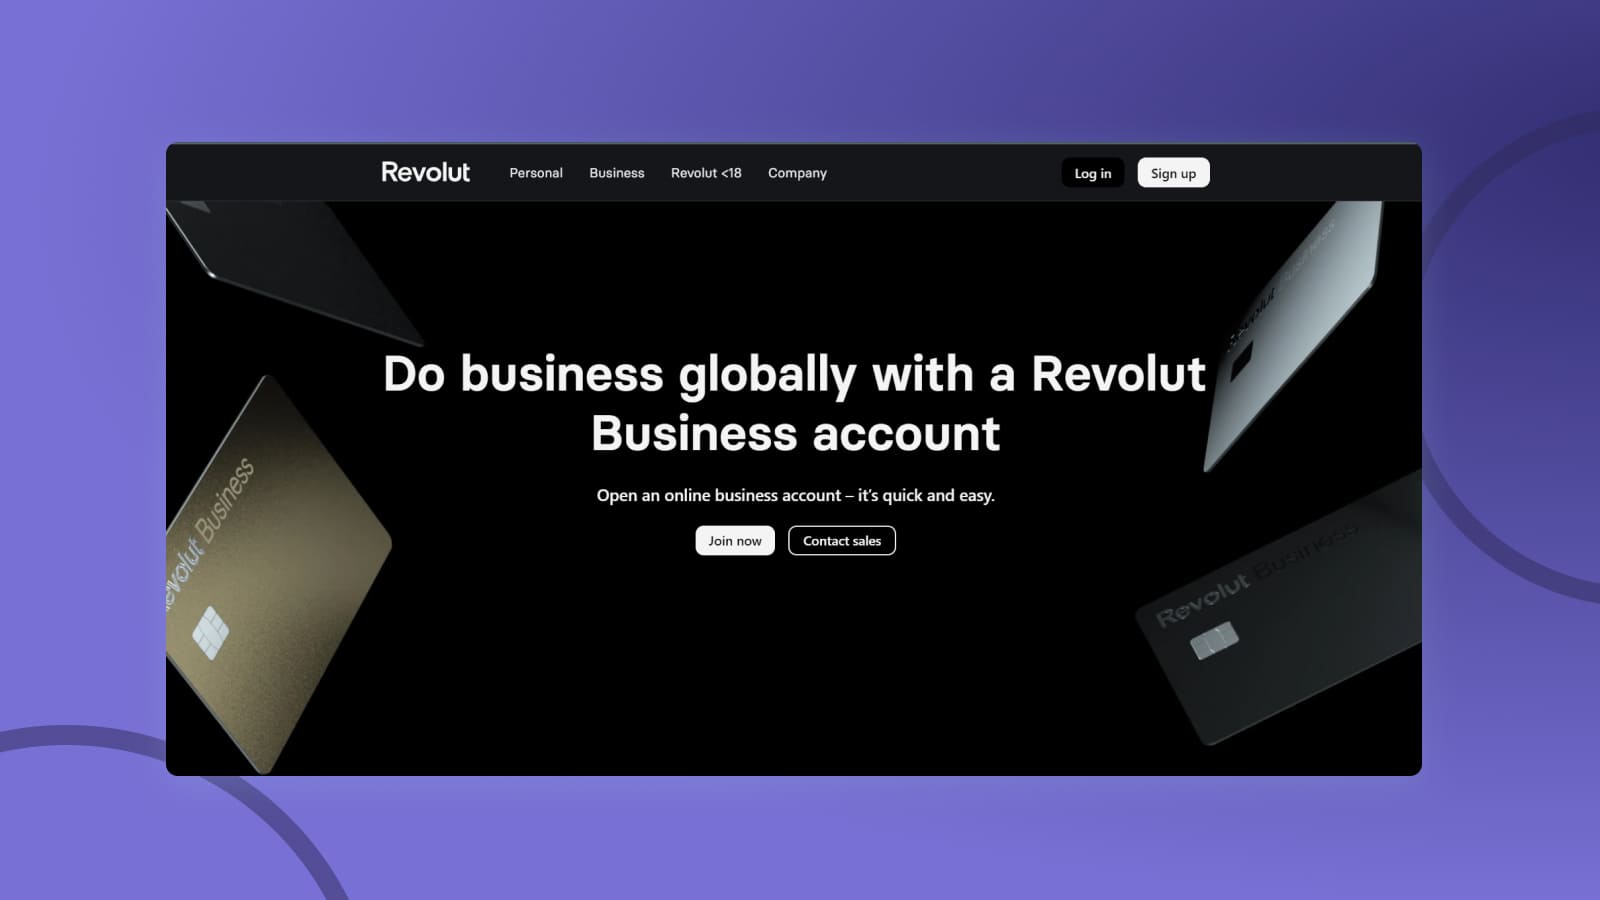 Интернет-банк Revolut предоставляет возможности для успешного ведения бизнеса